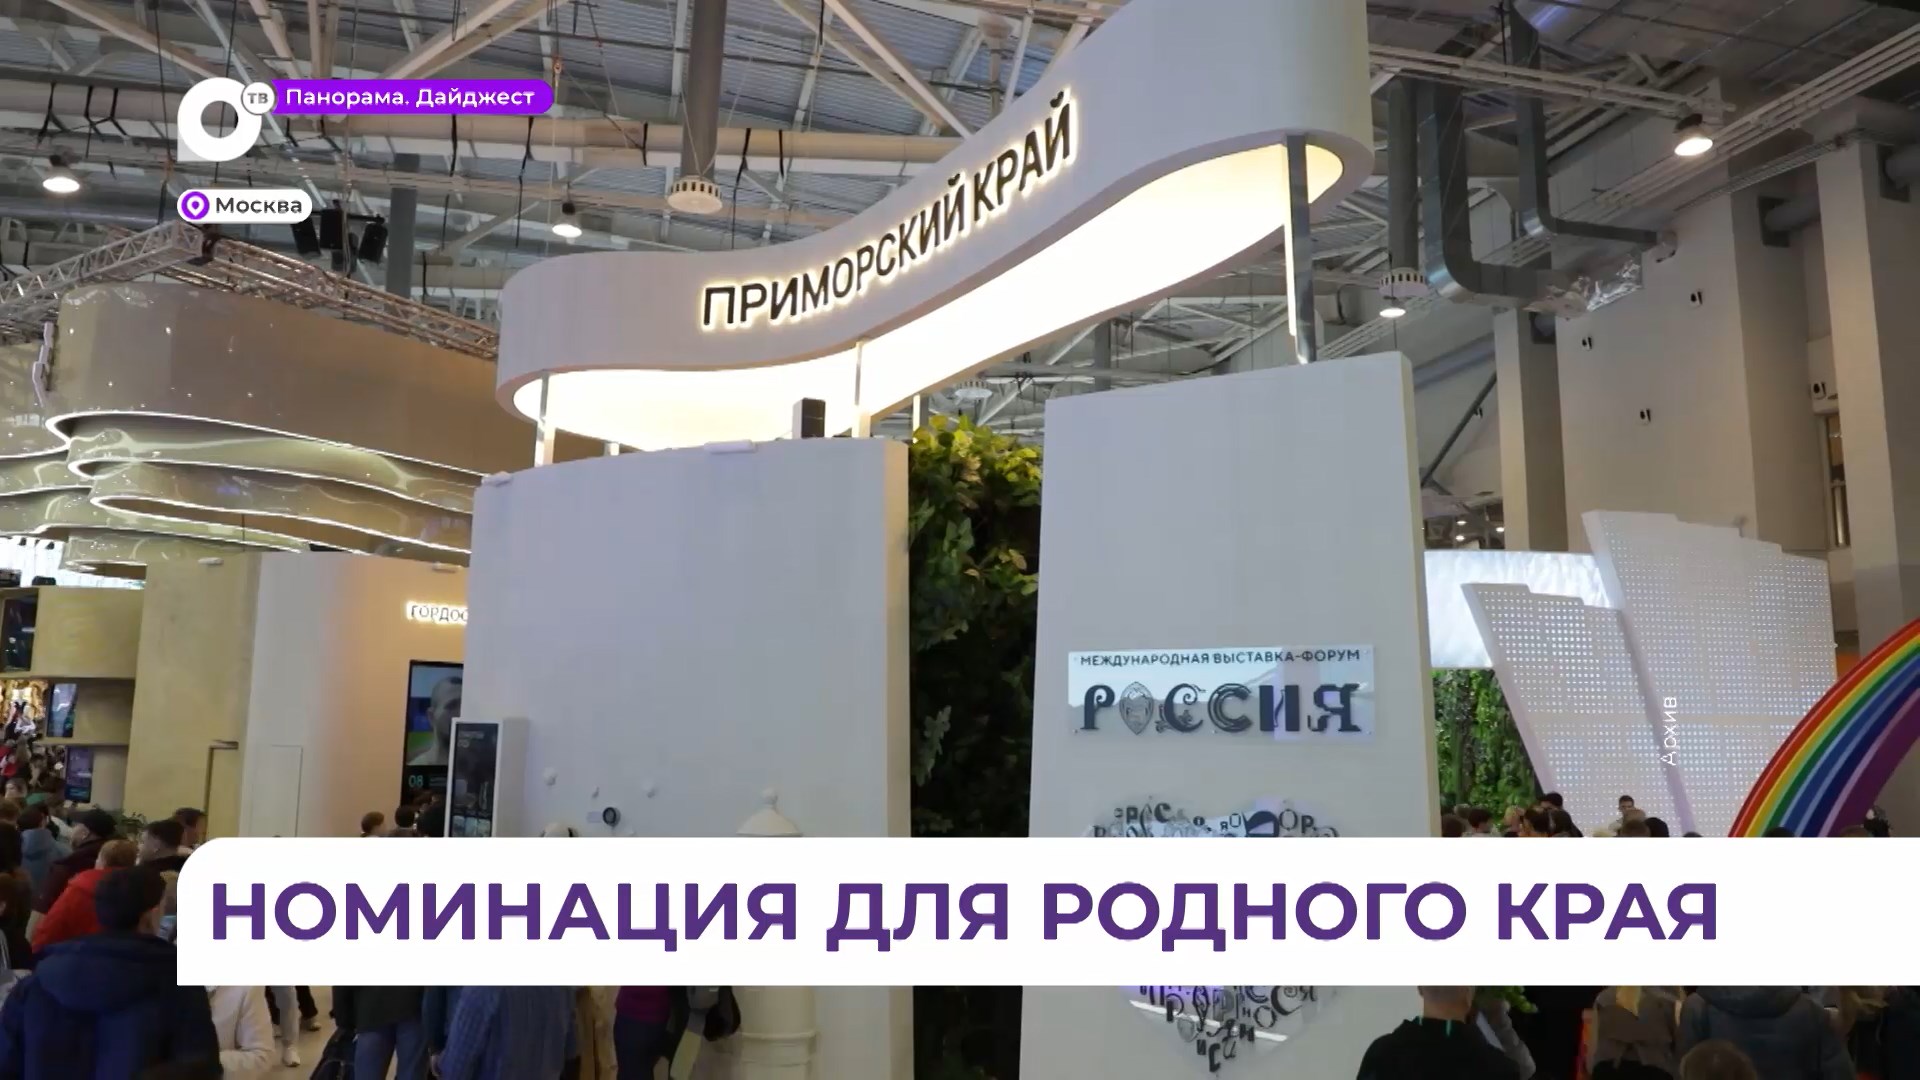 Поддержать павильон Приморья на выставке «Россия» в Москве можно еженедельно